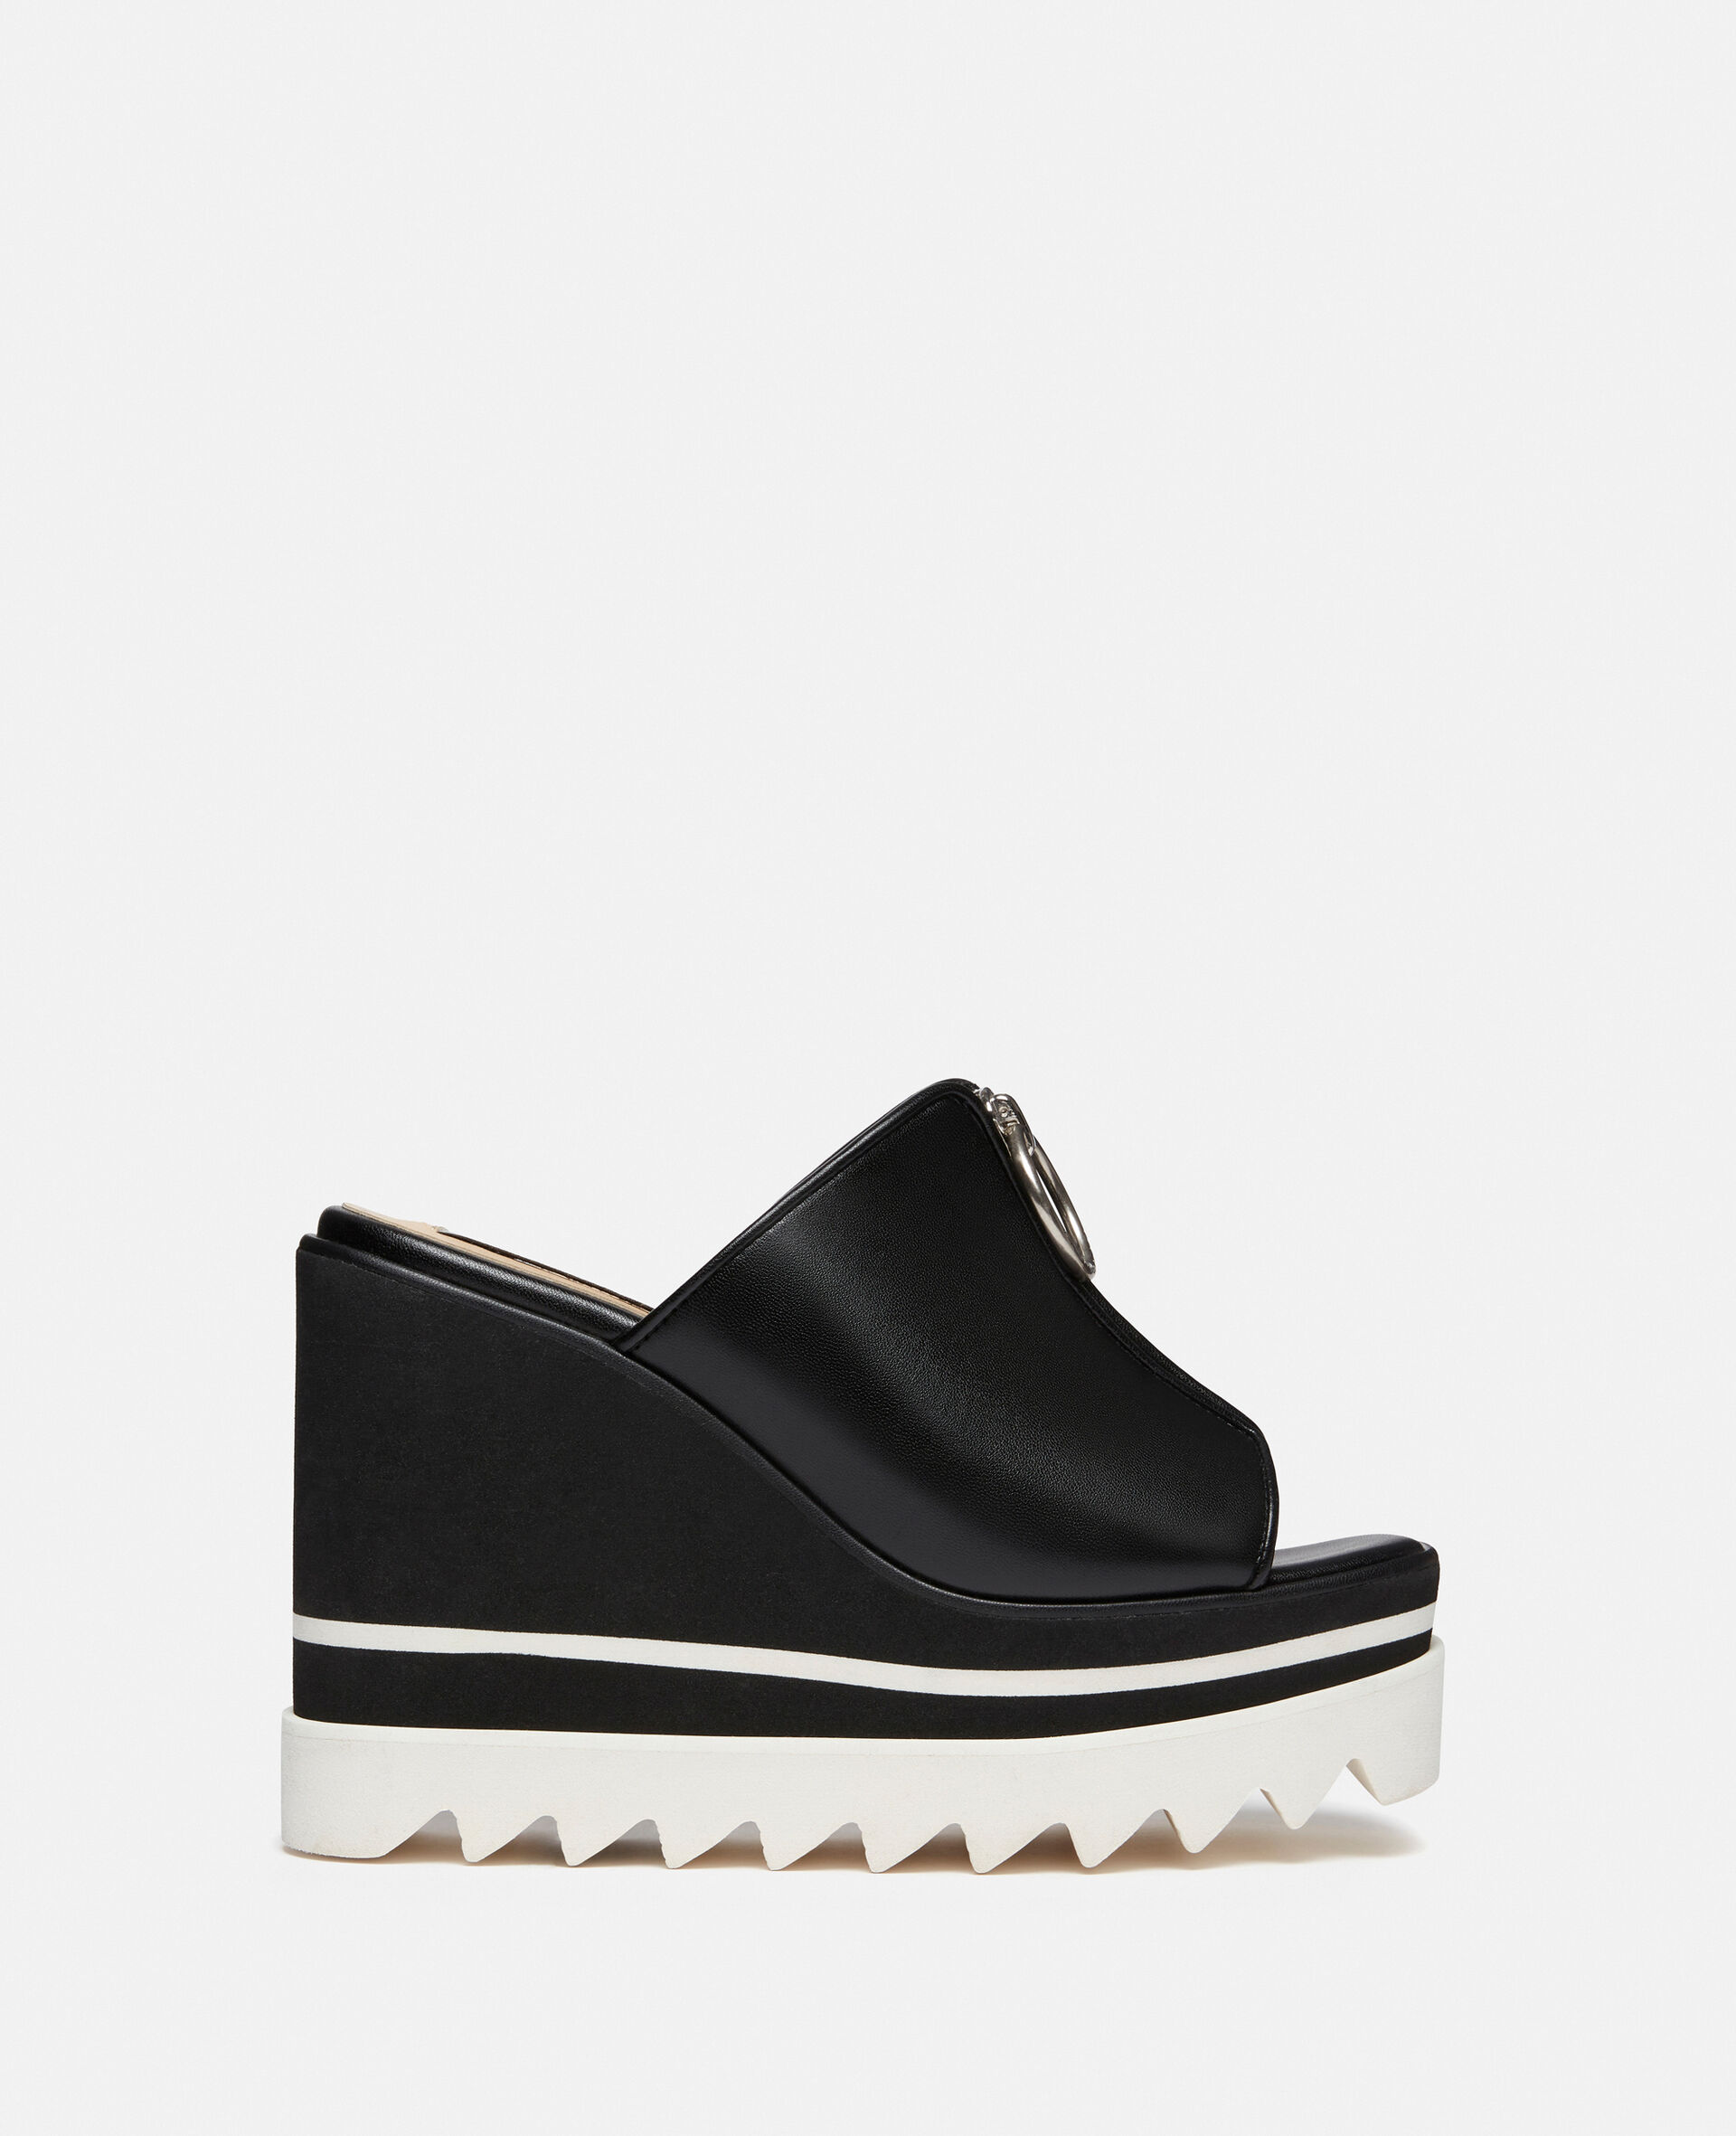 Sneak-Elyse Zip Slide Wedge Sandals-Black-large image number 0